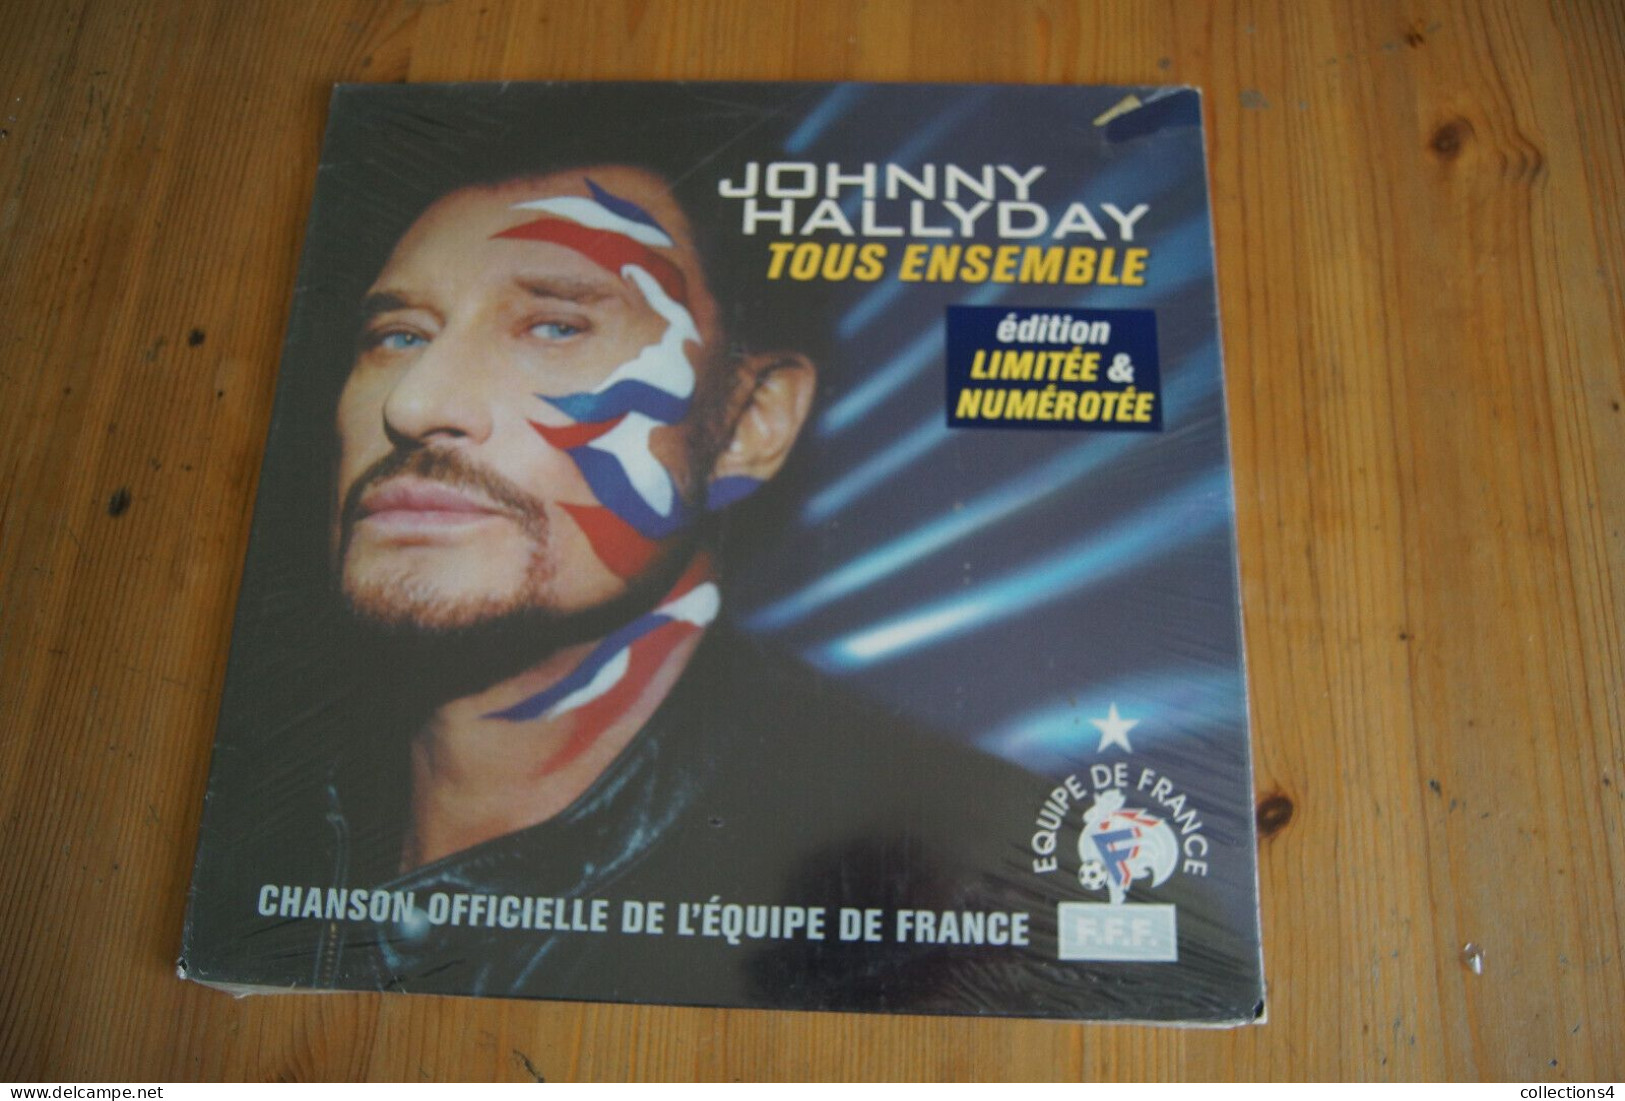 JOHNNY HALLYDAY TOUS ENSEMBLE MAXI 45T NUMEROTEE NEUF SCELLE 2002 - 45 Rpm - Maxi-Single